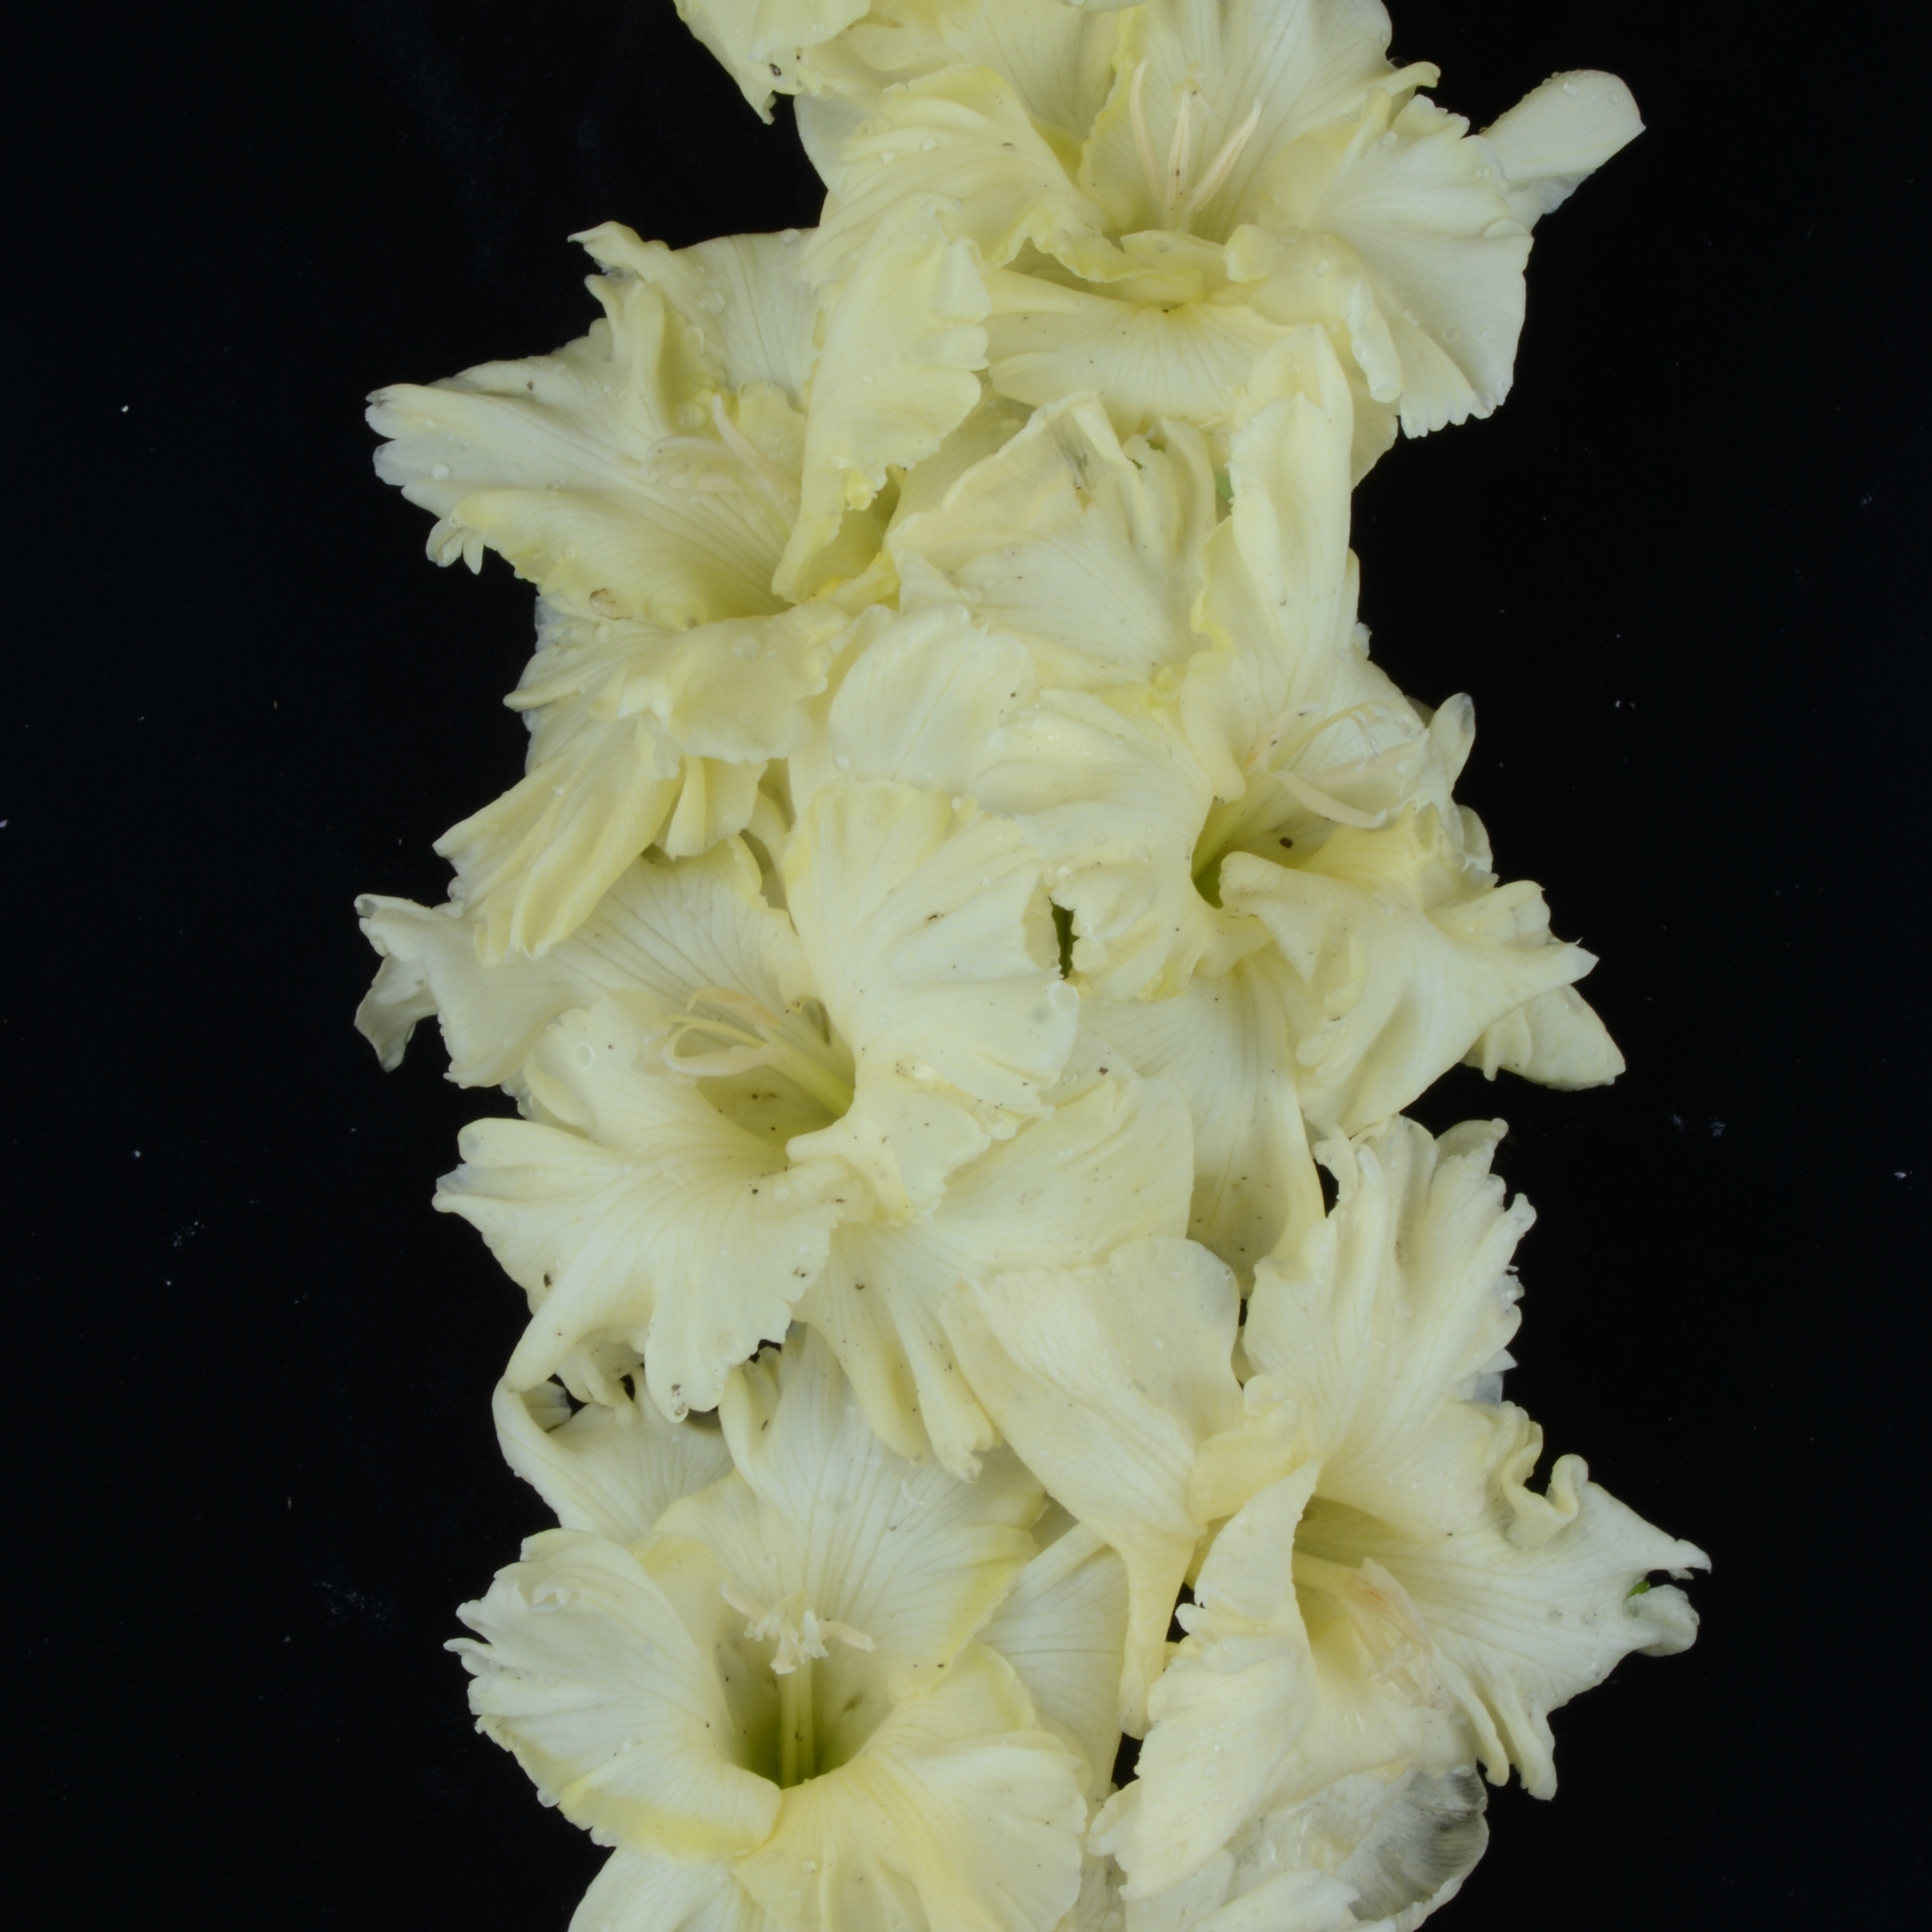 Гладиолус крупноцветковый Нарцисс